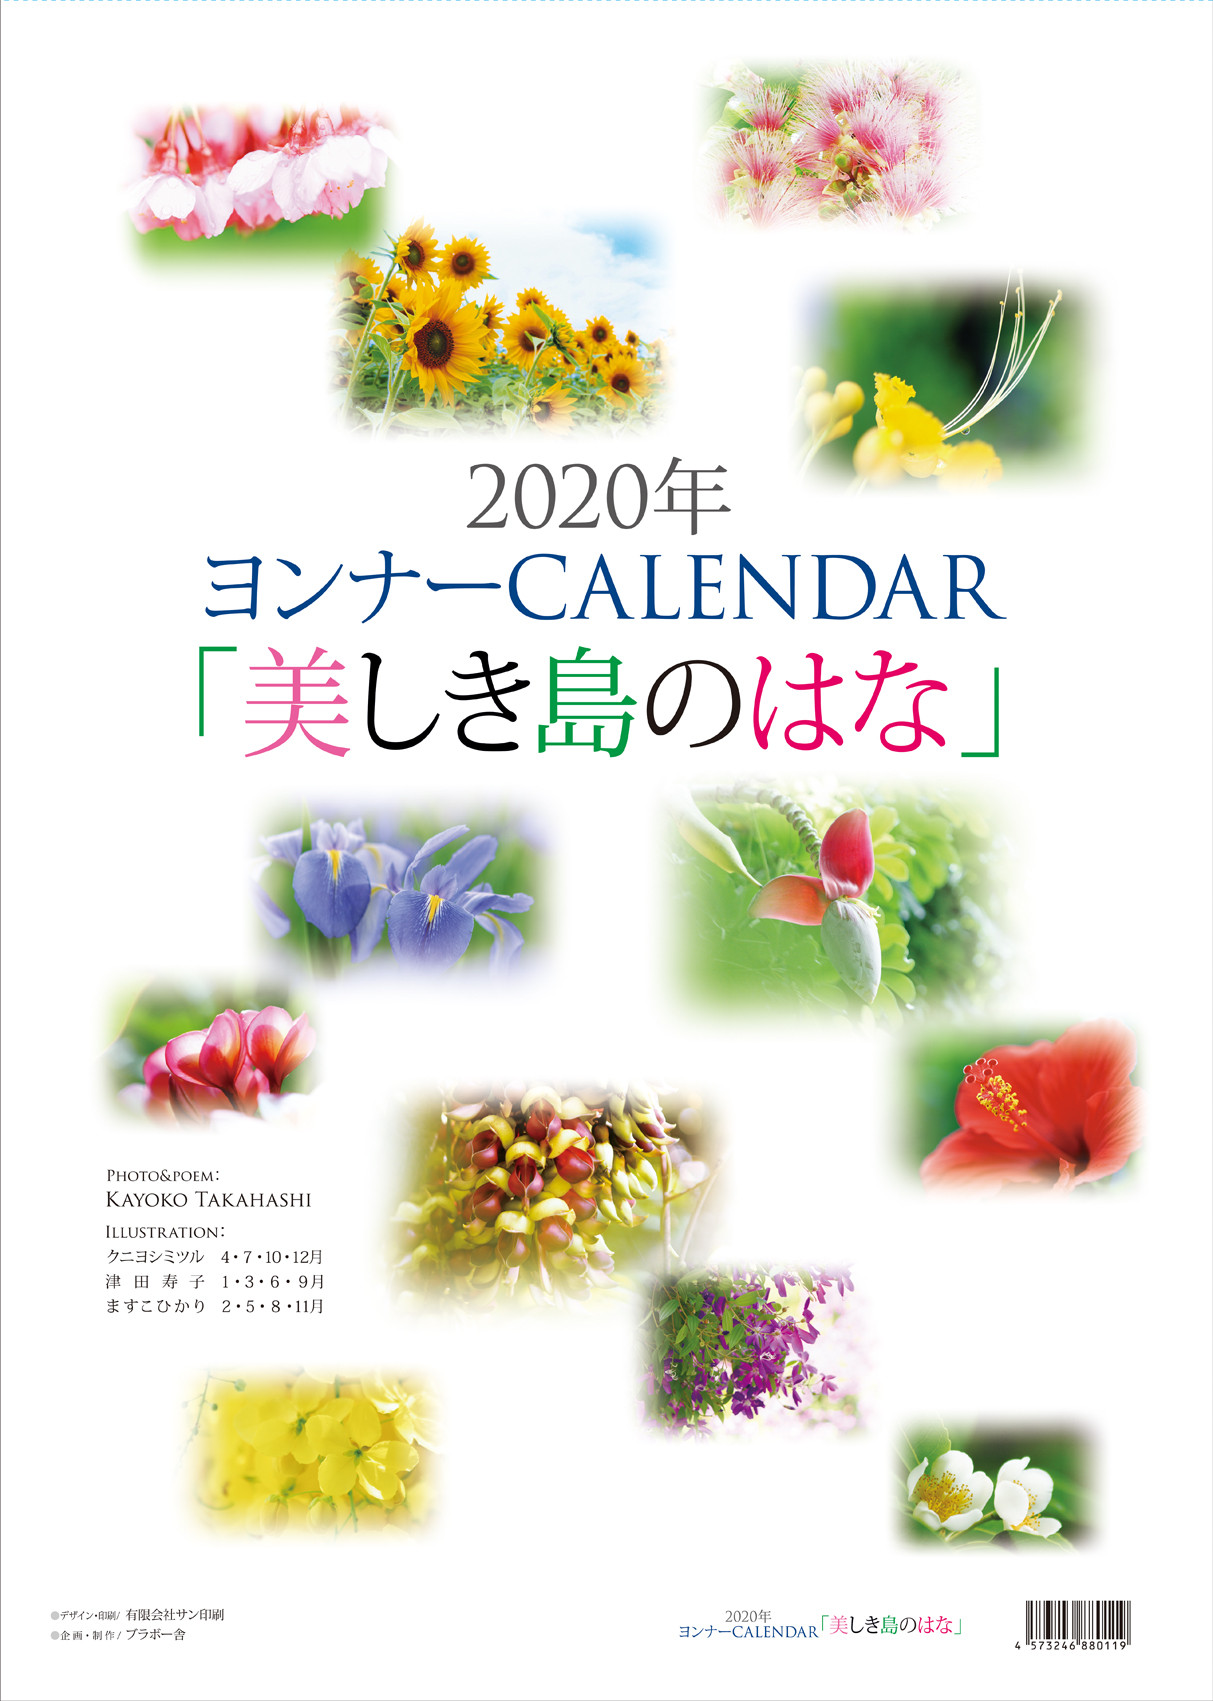 ＜2020ヨンナーCALENDAR「美しき島のはな」はB３版サイズ、表紙＋本文１２枚の壁掛けタイプです。表紙に12点の花をあしらい、3月にはオクラレルカを紹介＞